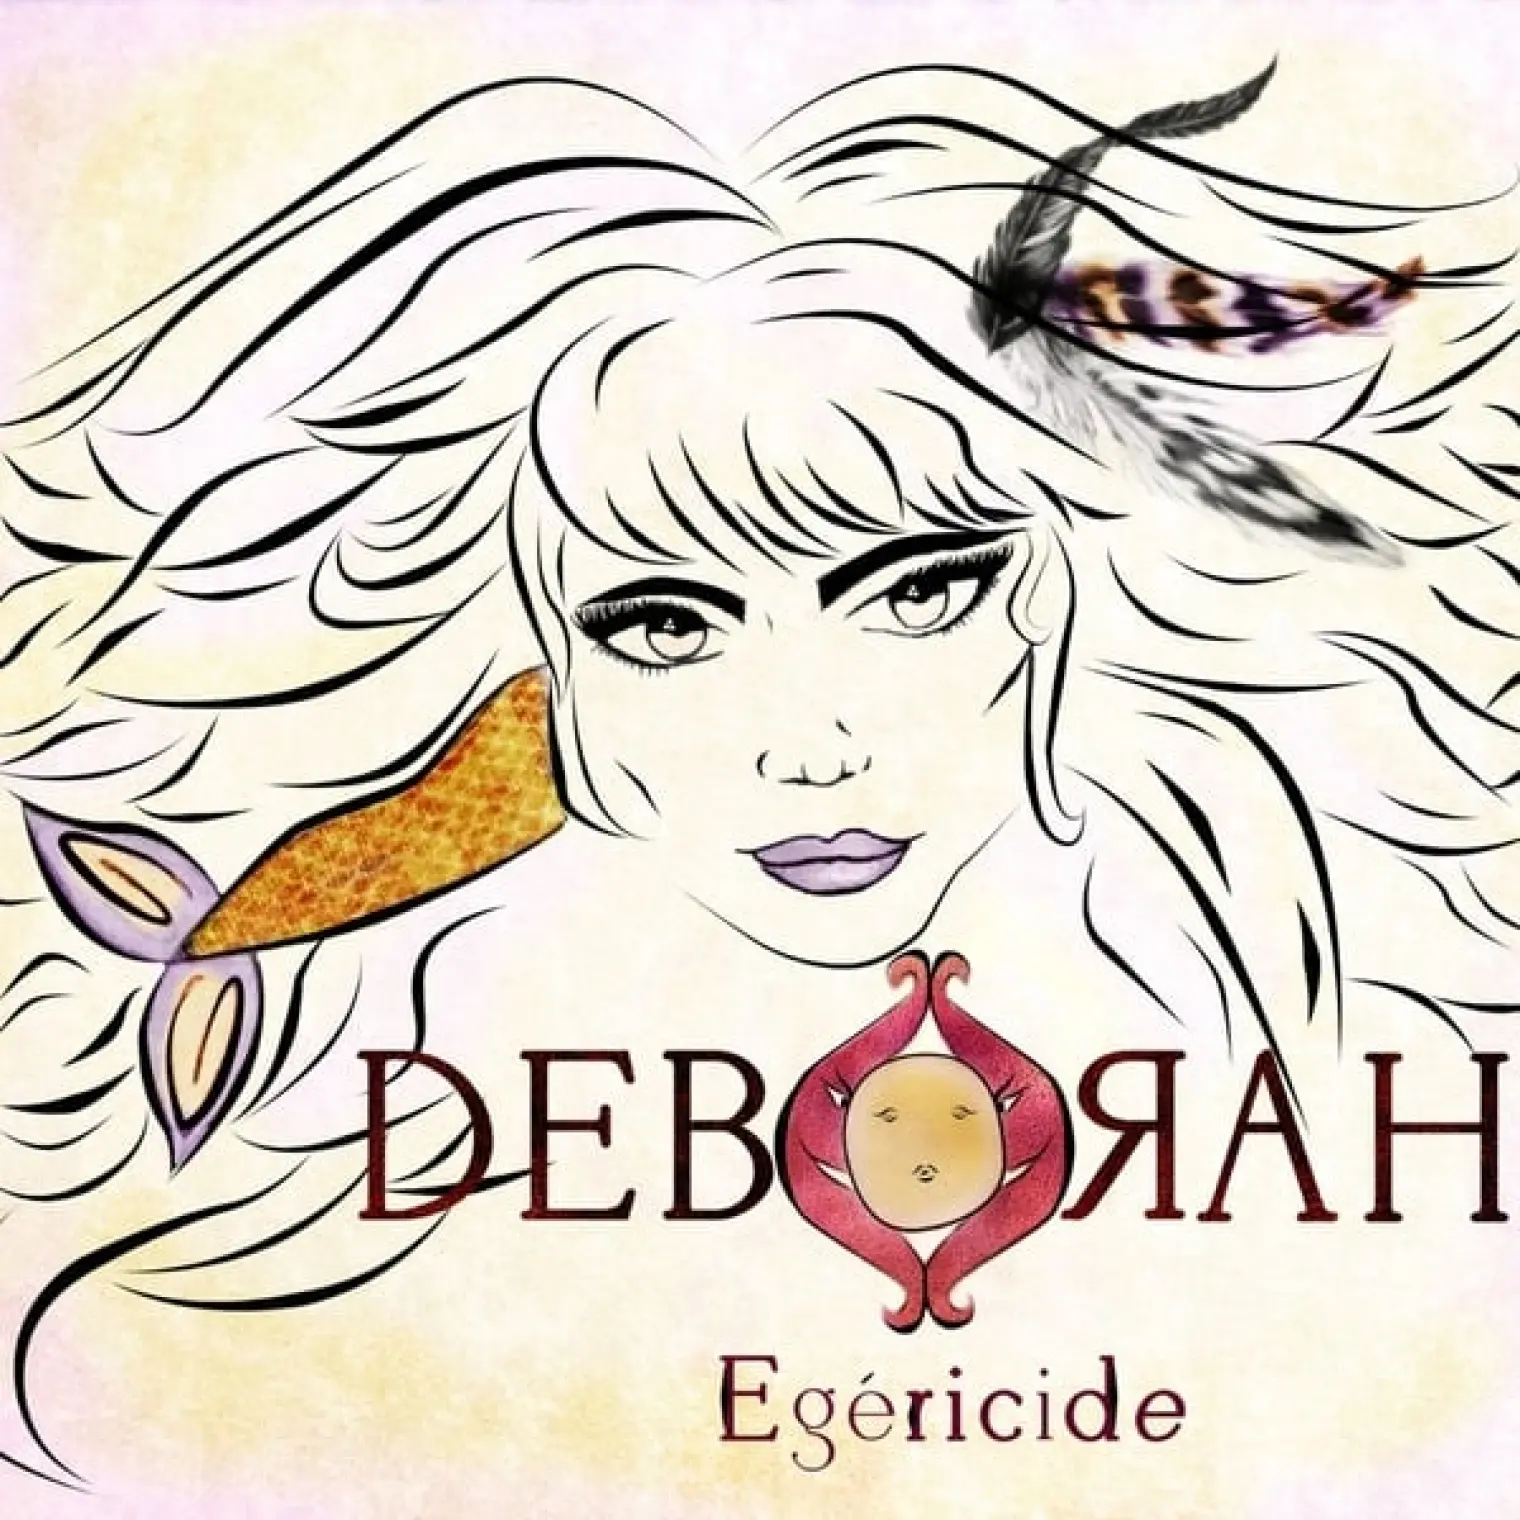 Egéricide -  Deborah 